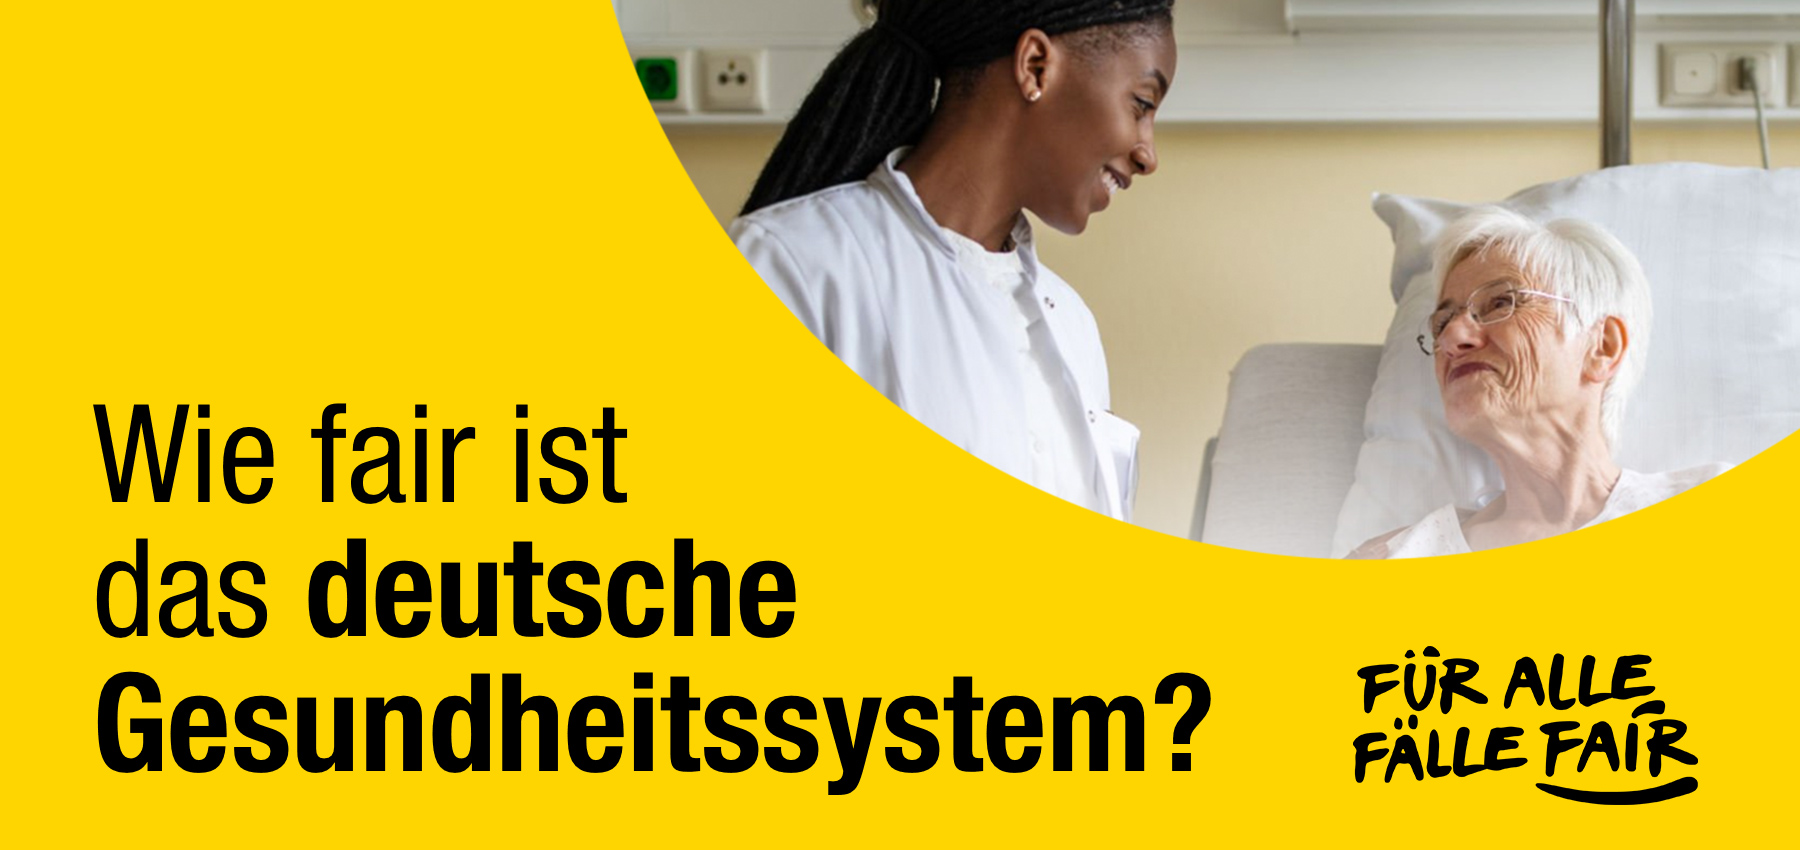 Wie fair ist das deutsche Gesundheitssystem?